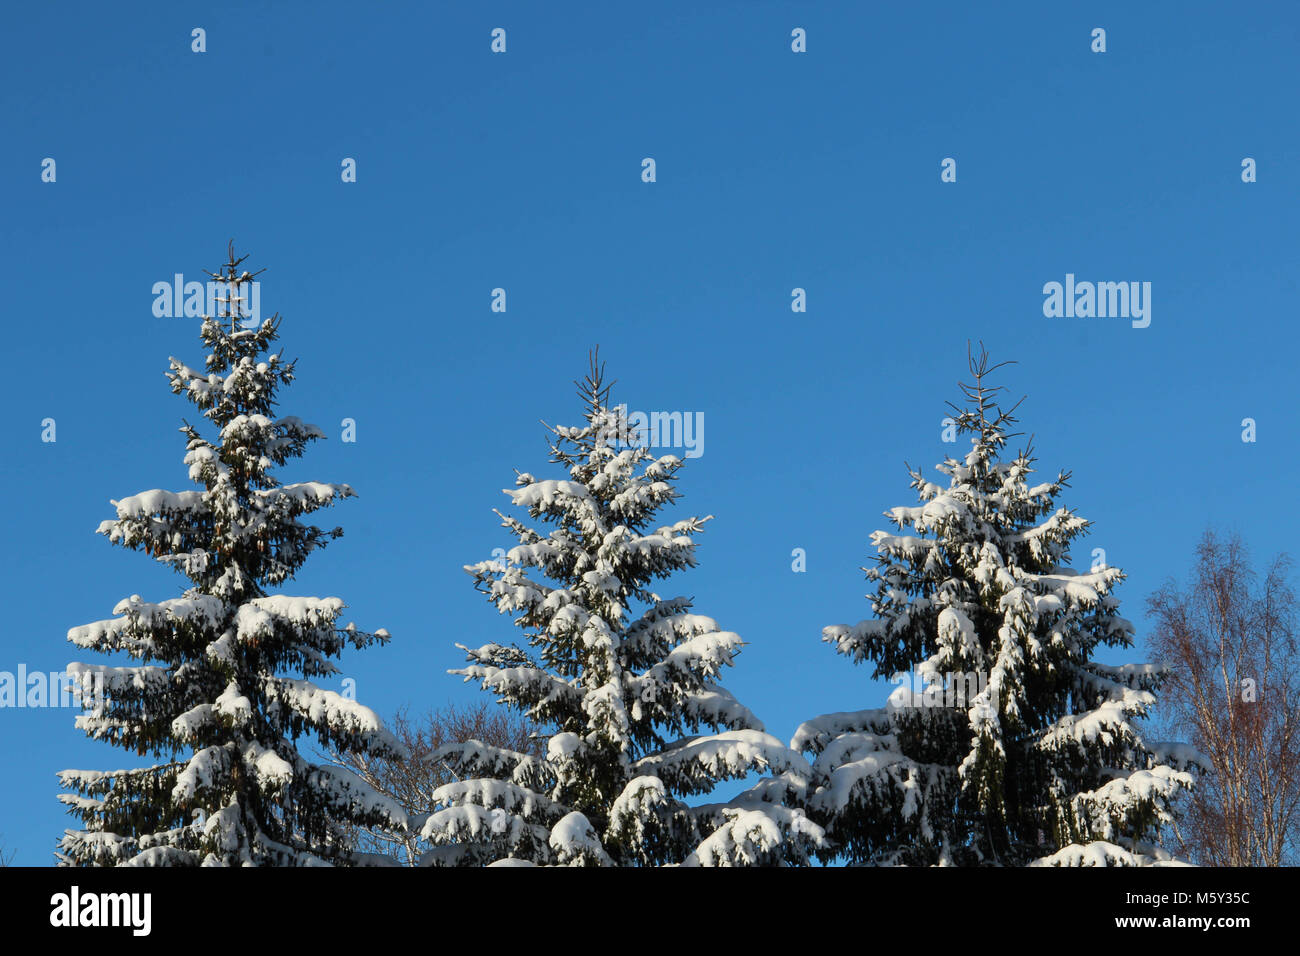 Trois sapins enneigés against a blue sky Banque D'Images